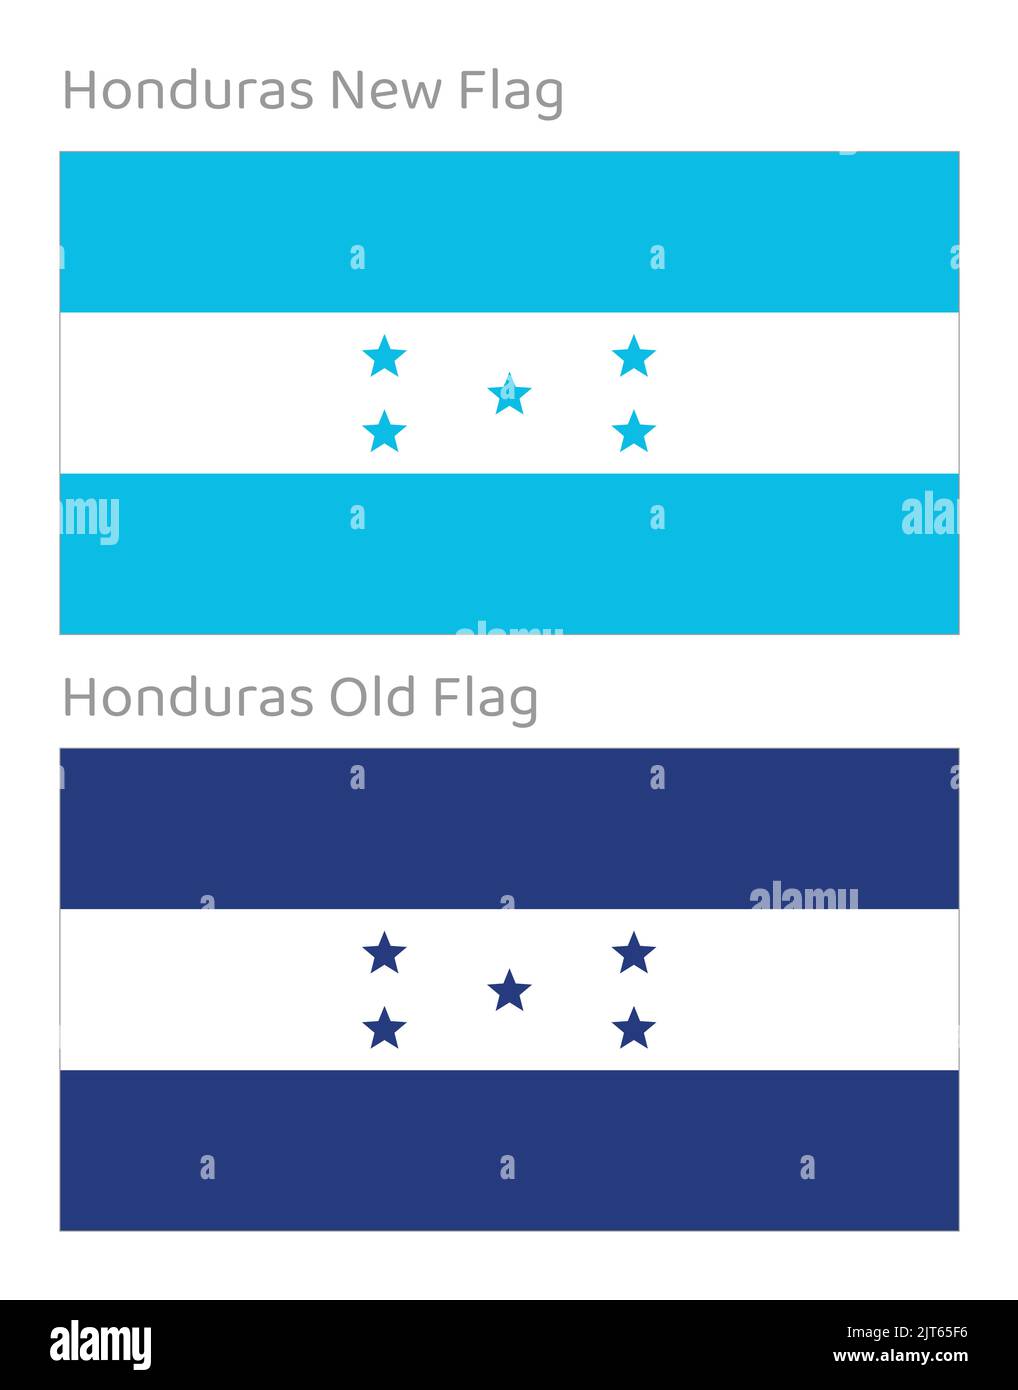 Honduras Bandiera Nazionale - Vector Bandiera di Honduras - vecchie e nuove bandiere di Honduras Illustrazione Vettoriale